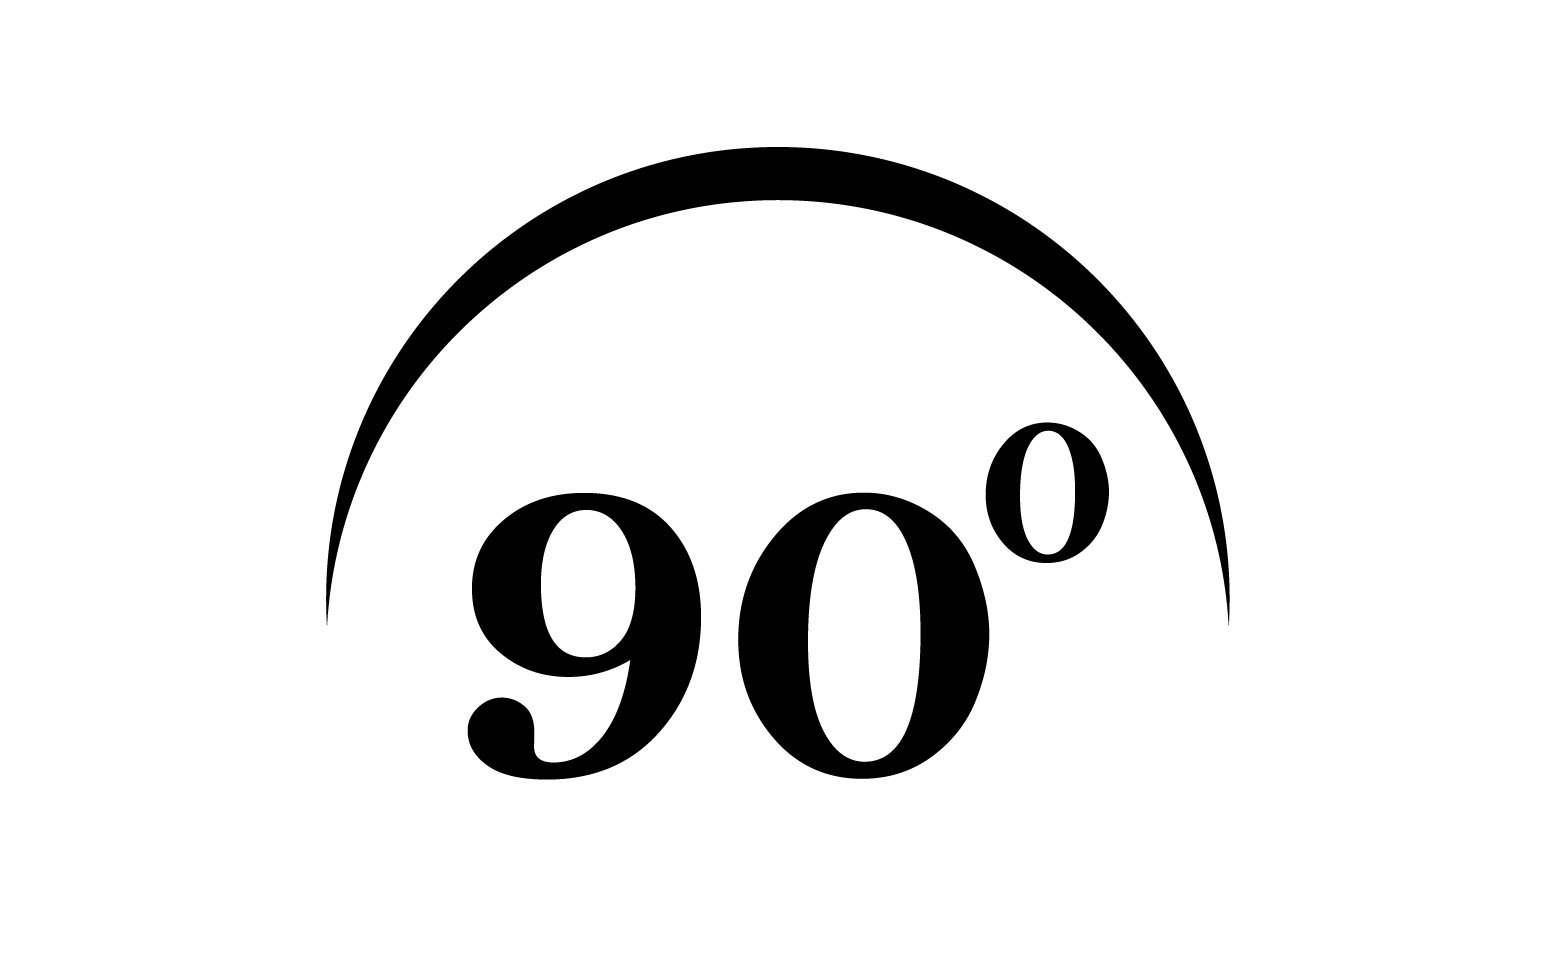 90 degree angle rotation icon symbol logo v52